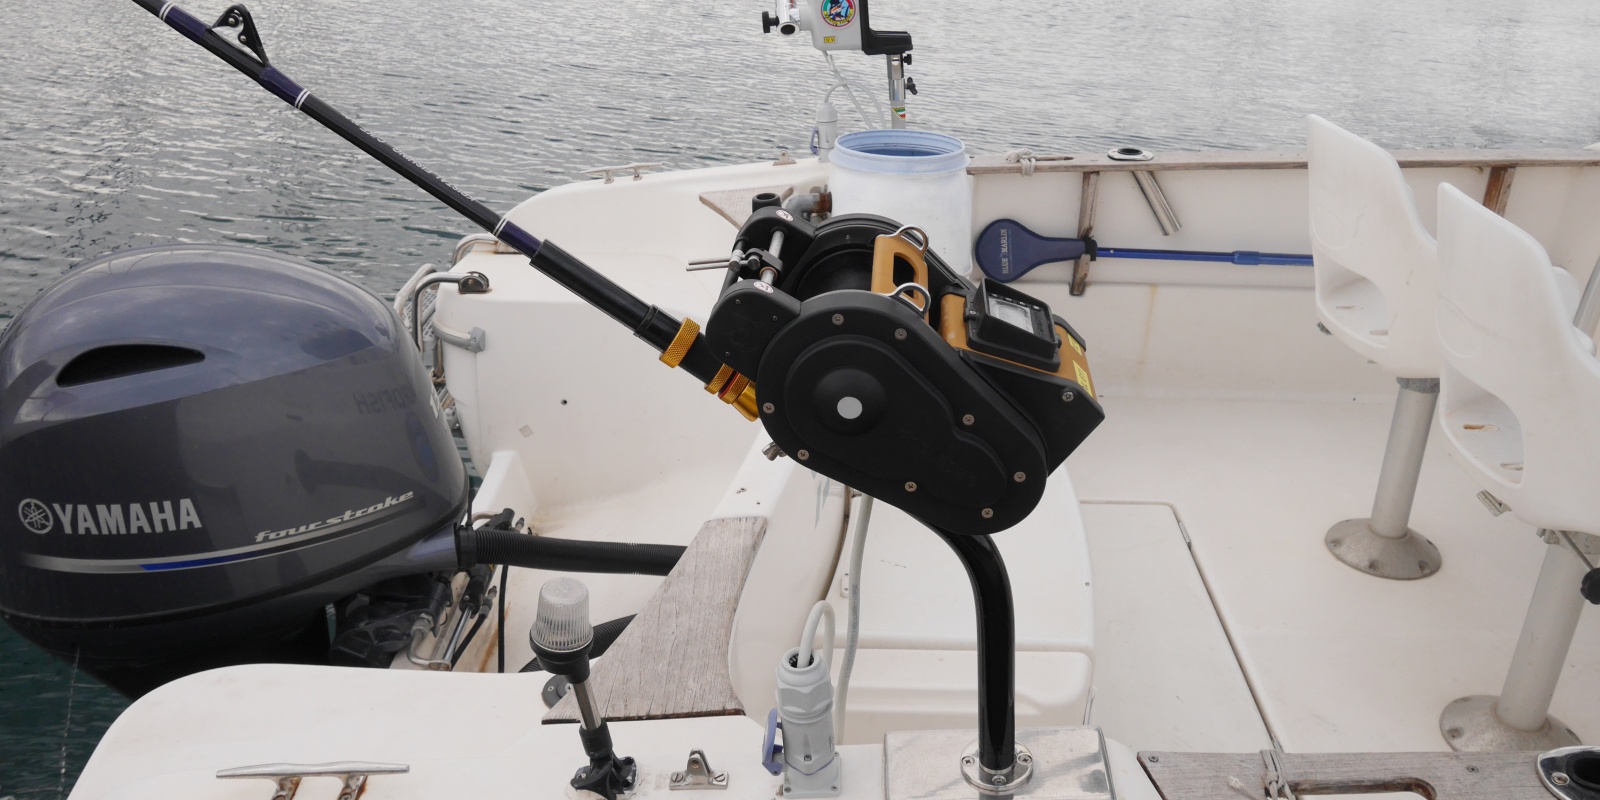 Le bateau du moniteur guide de pêche Fabien Harbers est équipé d’un treuil électrique XL 92 dont il utilise la fonction downrigger ainsi que d’un moulinet XL 611 digital pour les pêches en grandes profondeurs. 